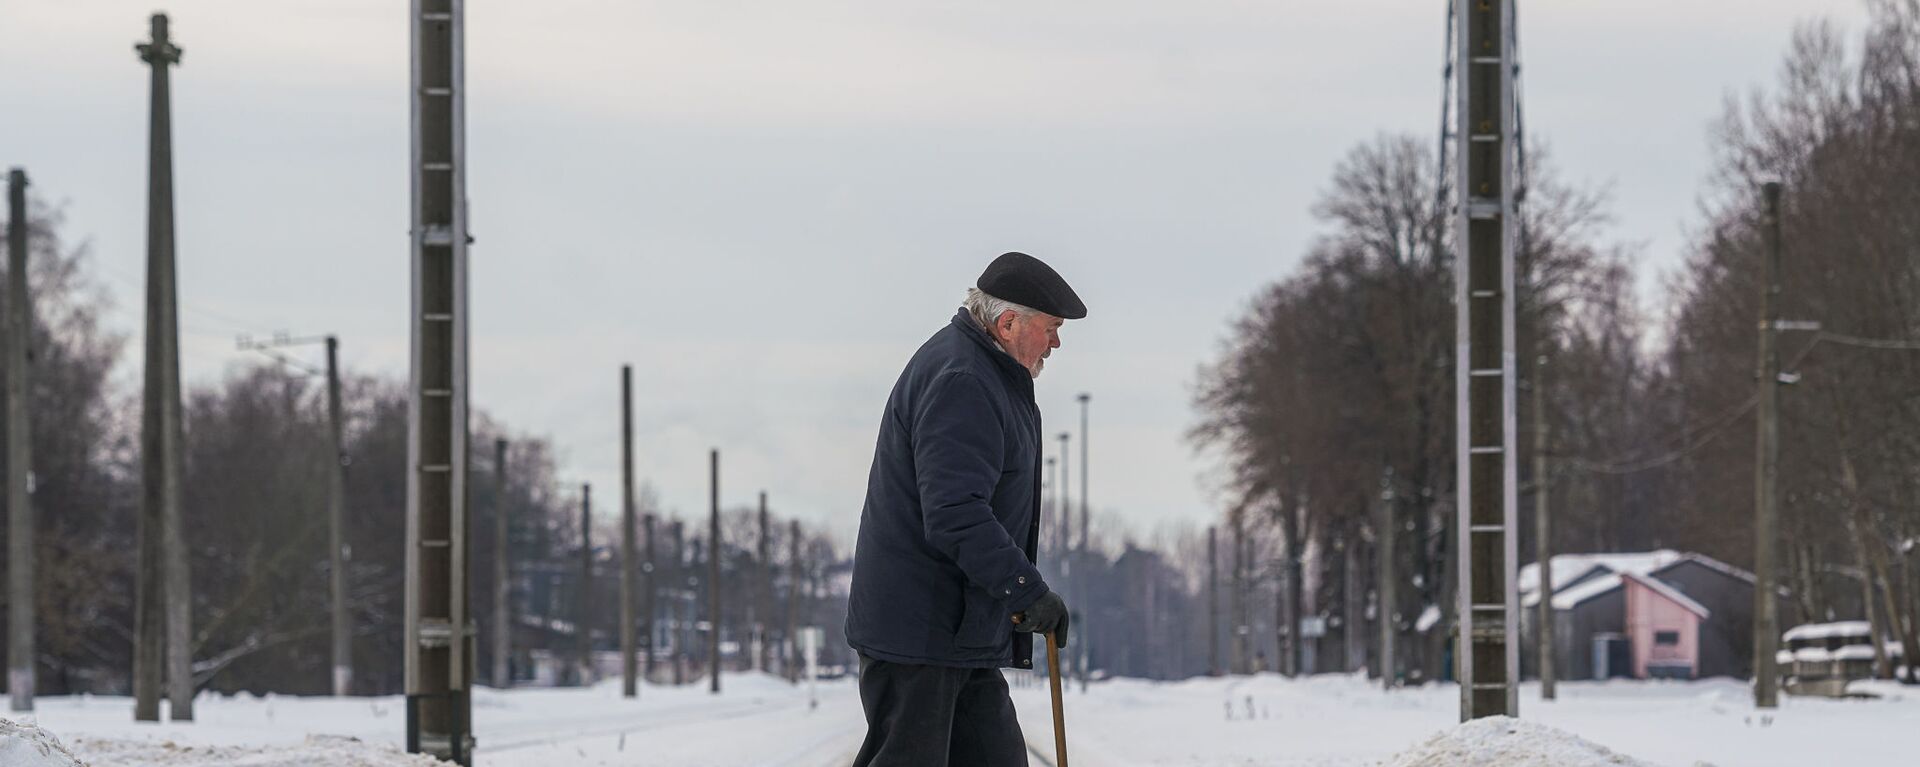 Пожилой мужчина переходит через железнодорожные пути - Sputnik Латвия, 1920, 19.03.2021